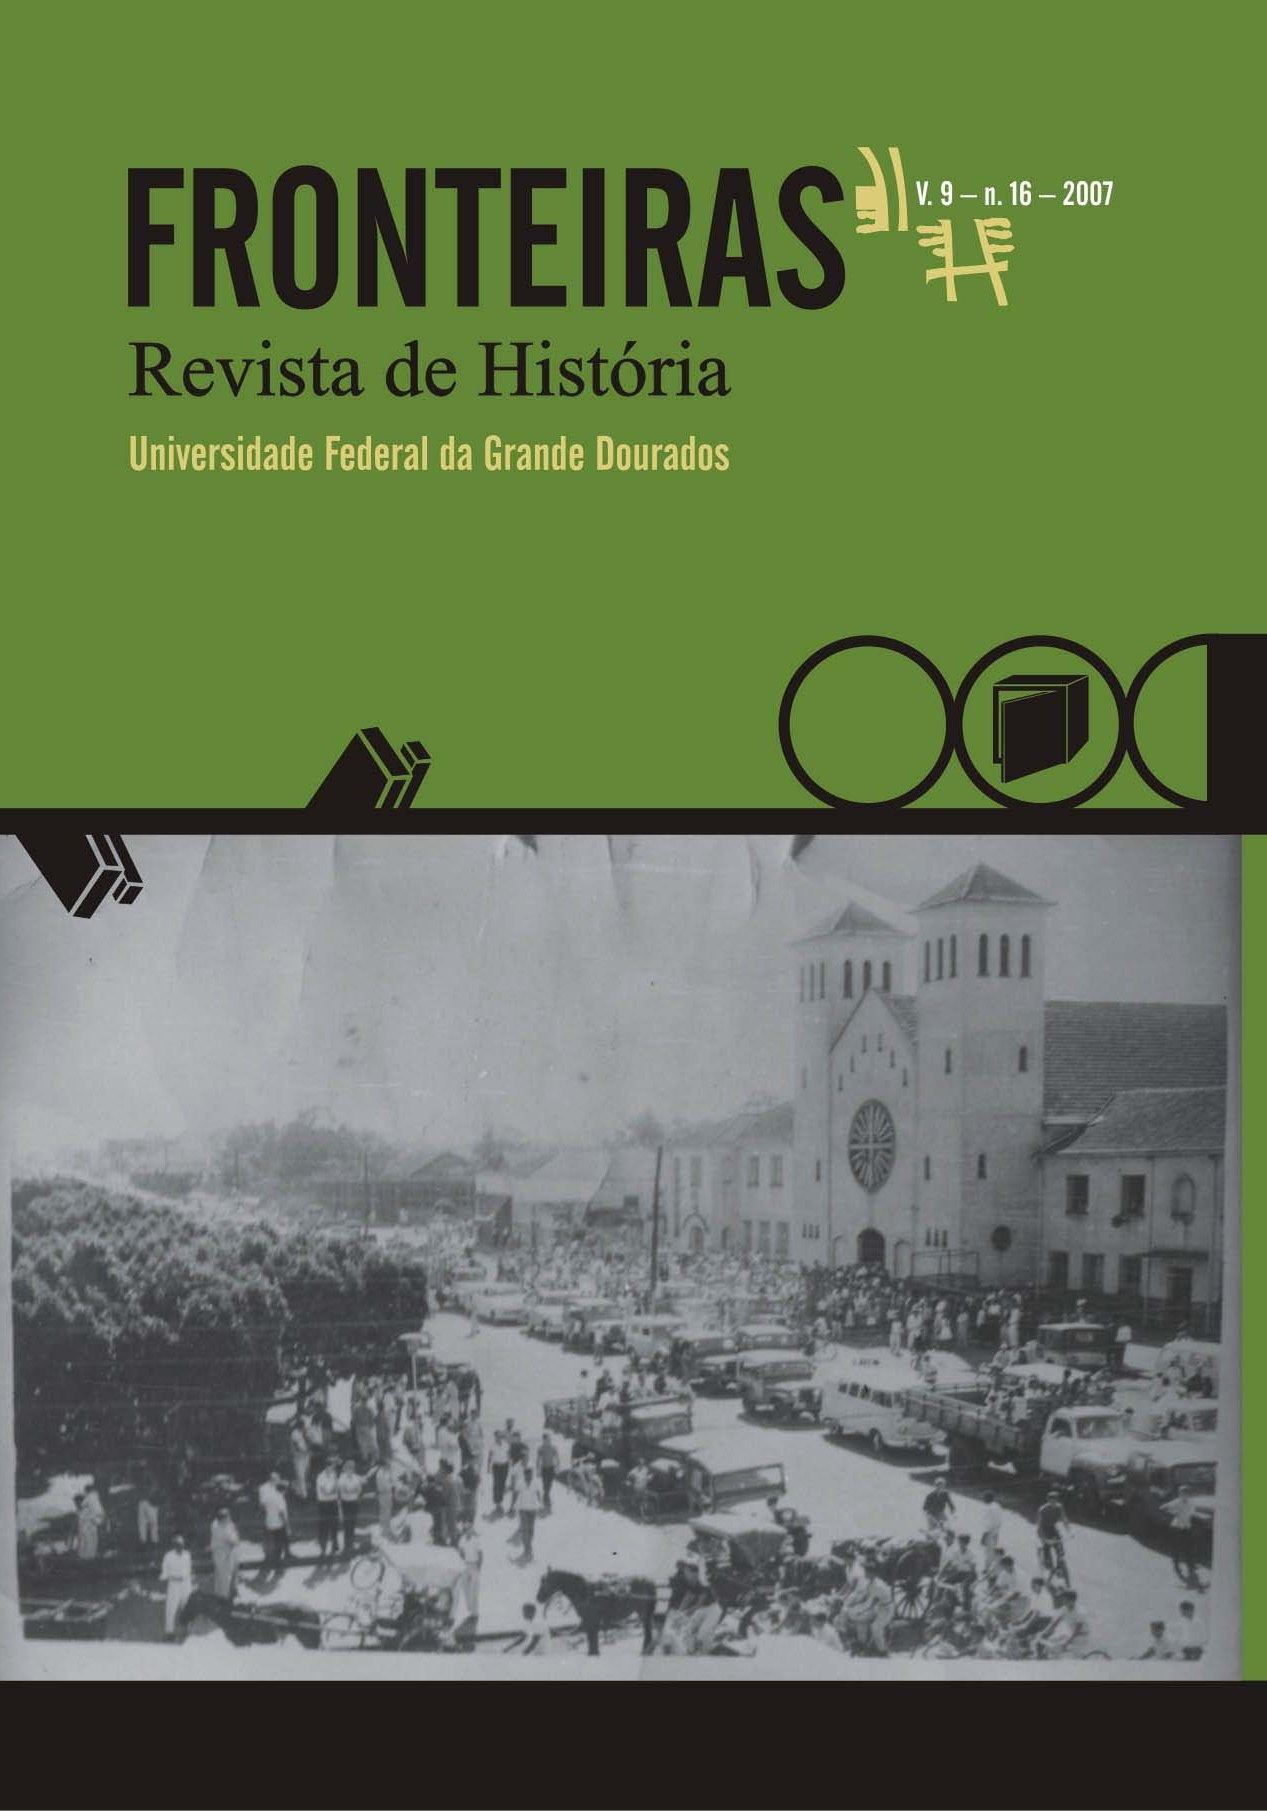 					Visualizar v. 9 n. 16 (2007): Fronteiras: Revista de História
				